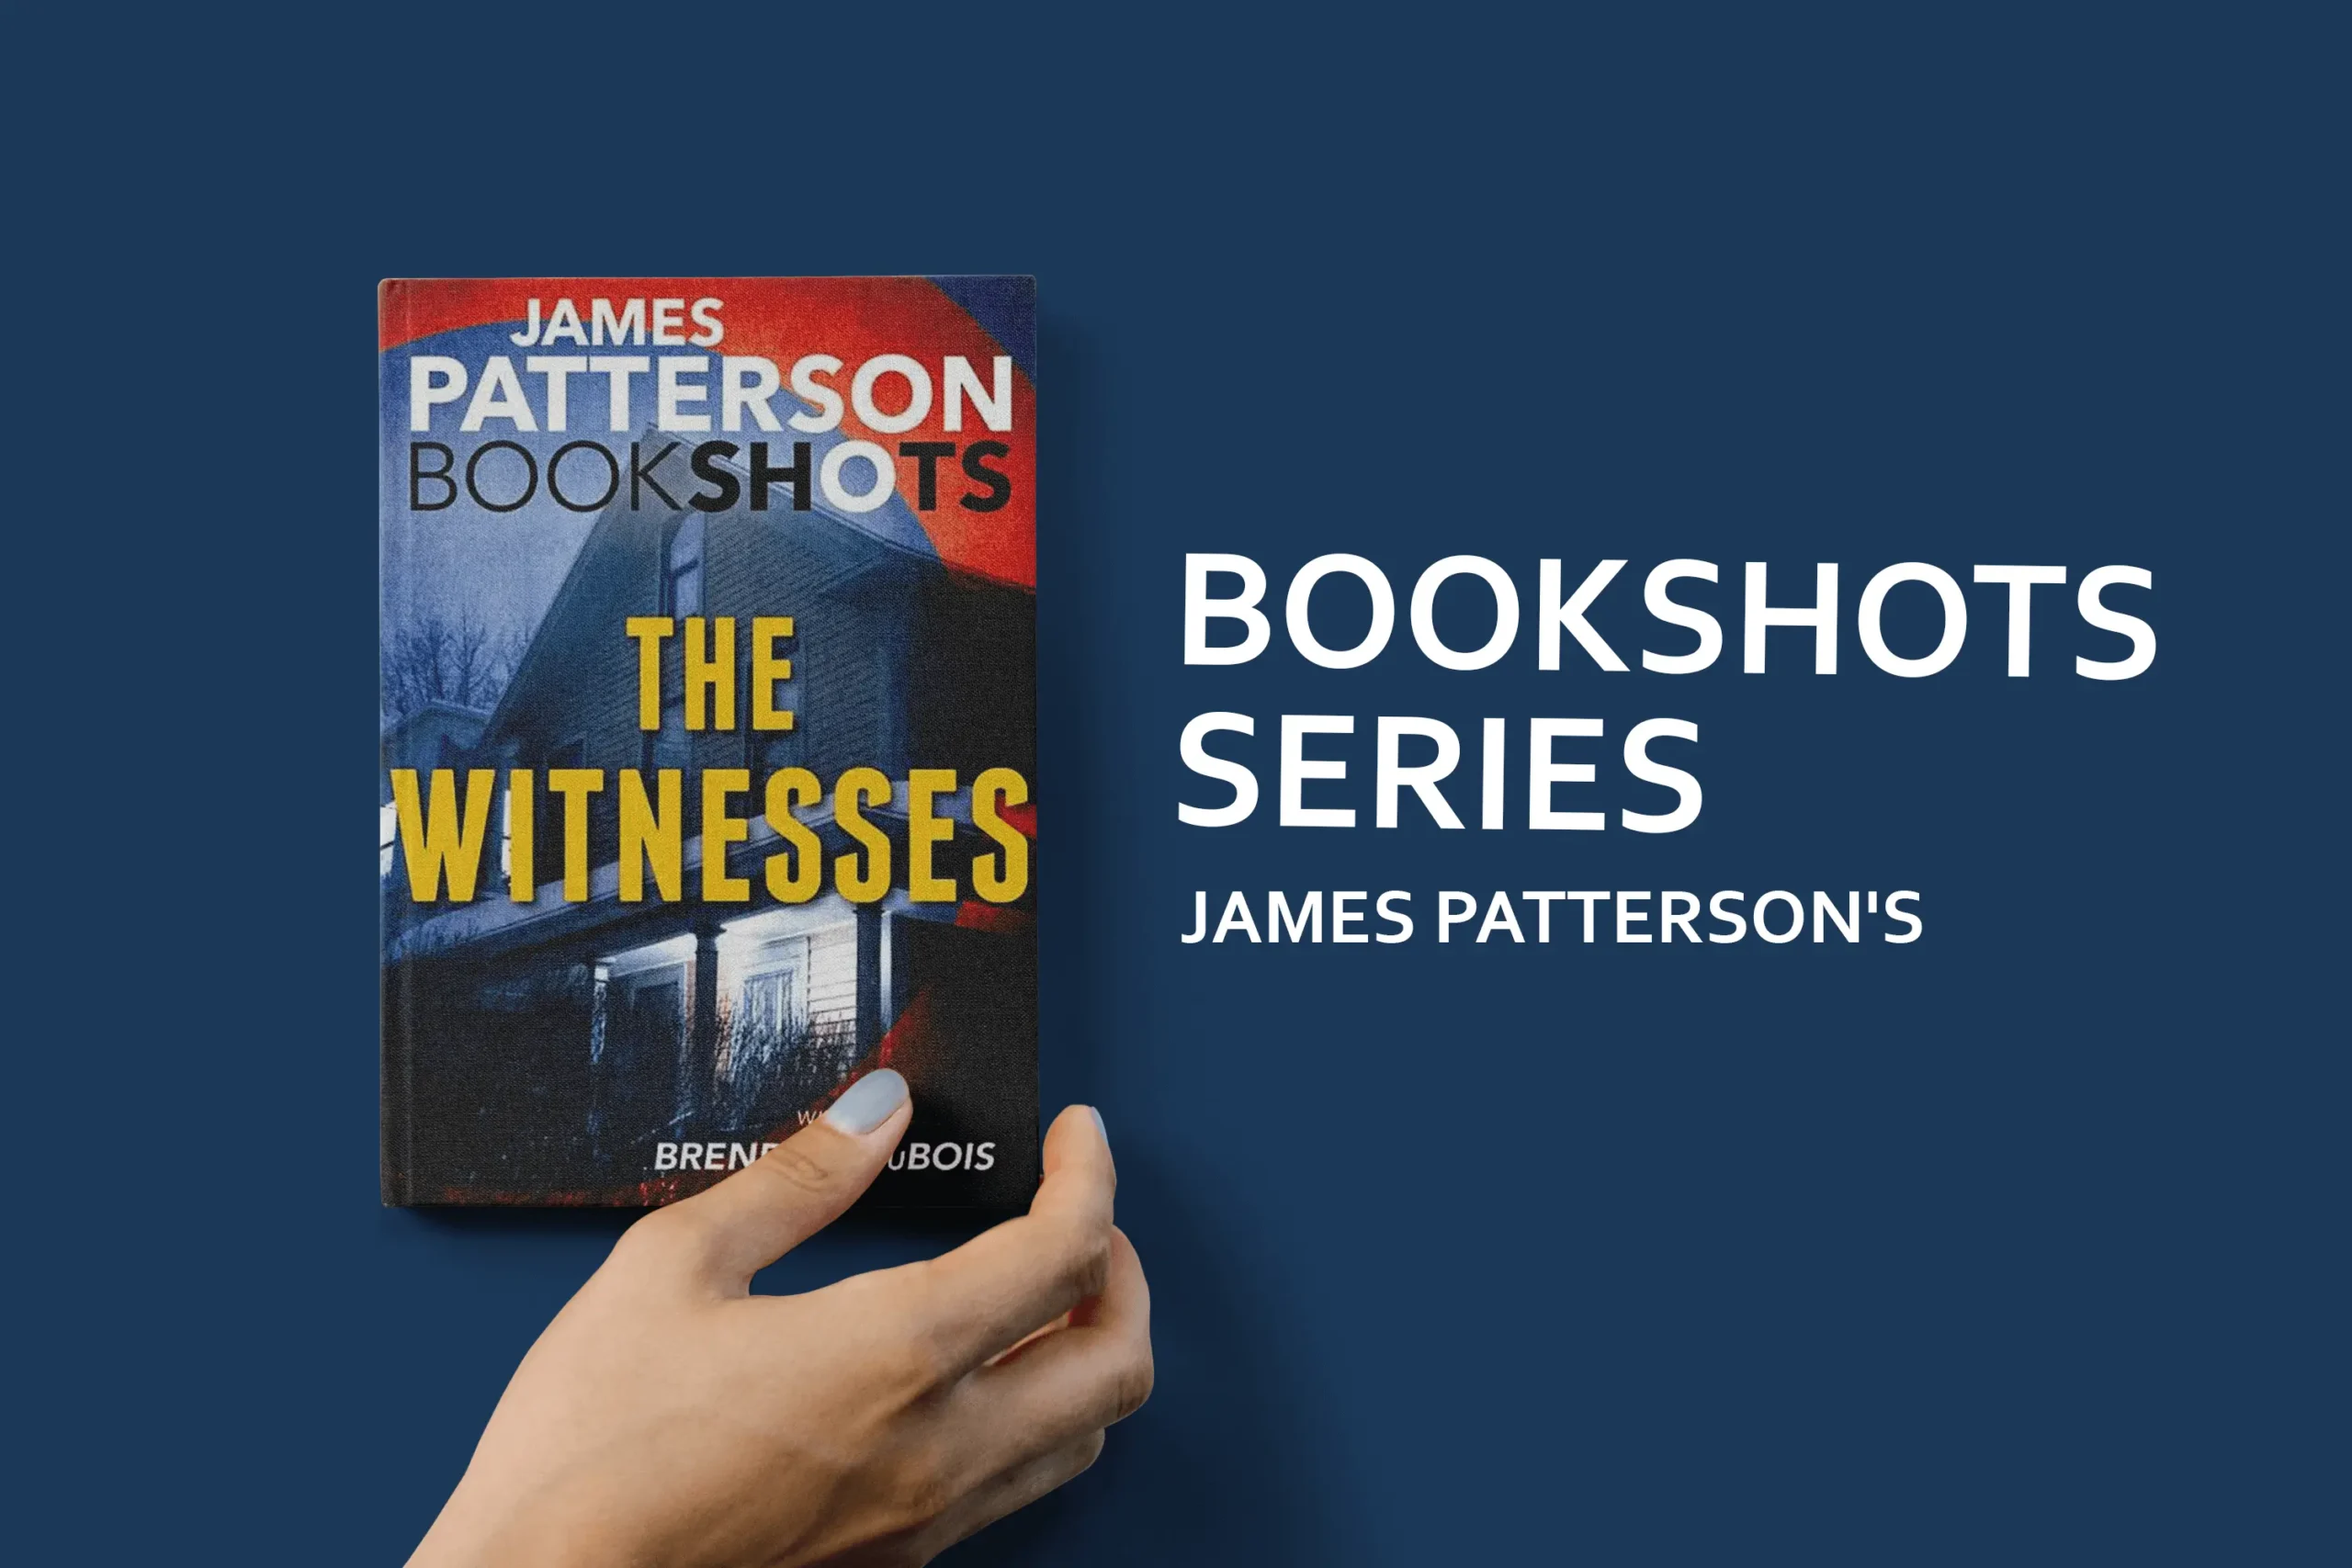 James Patterson's BookShots